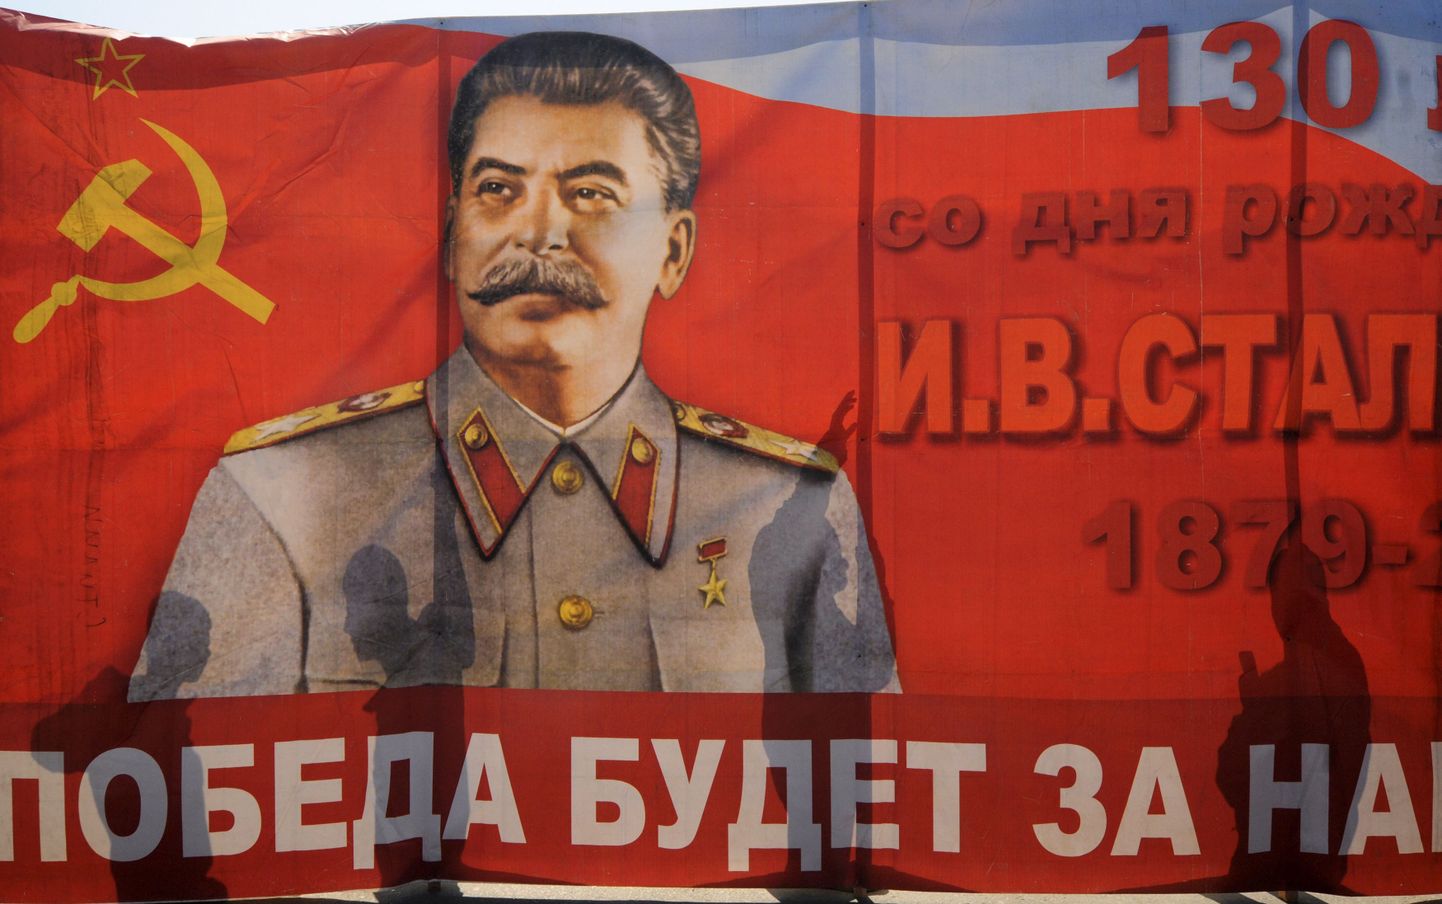 Этот плакат с изображением Сталина был вывешен в Волгограде на майские праздники в 2011 году.